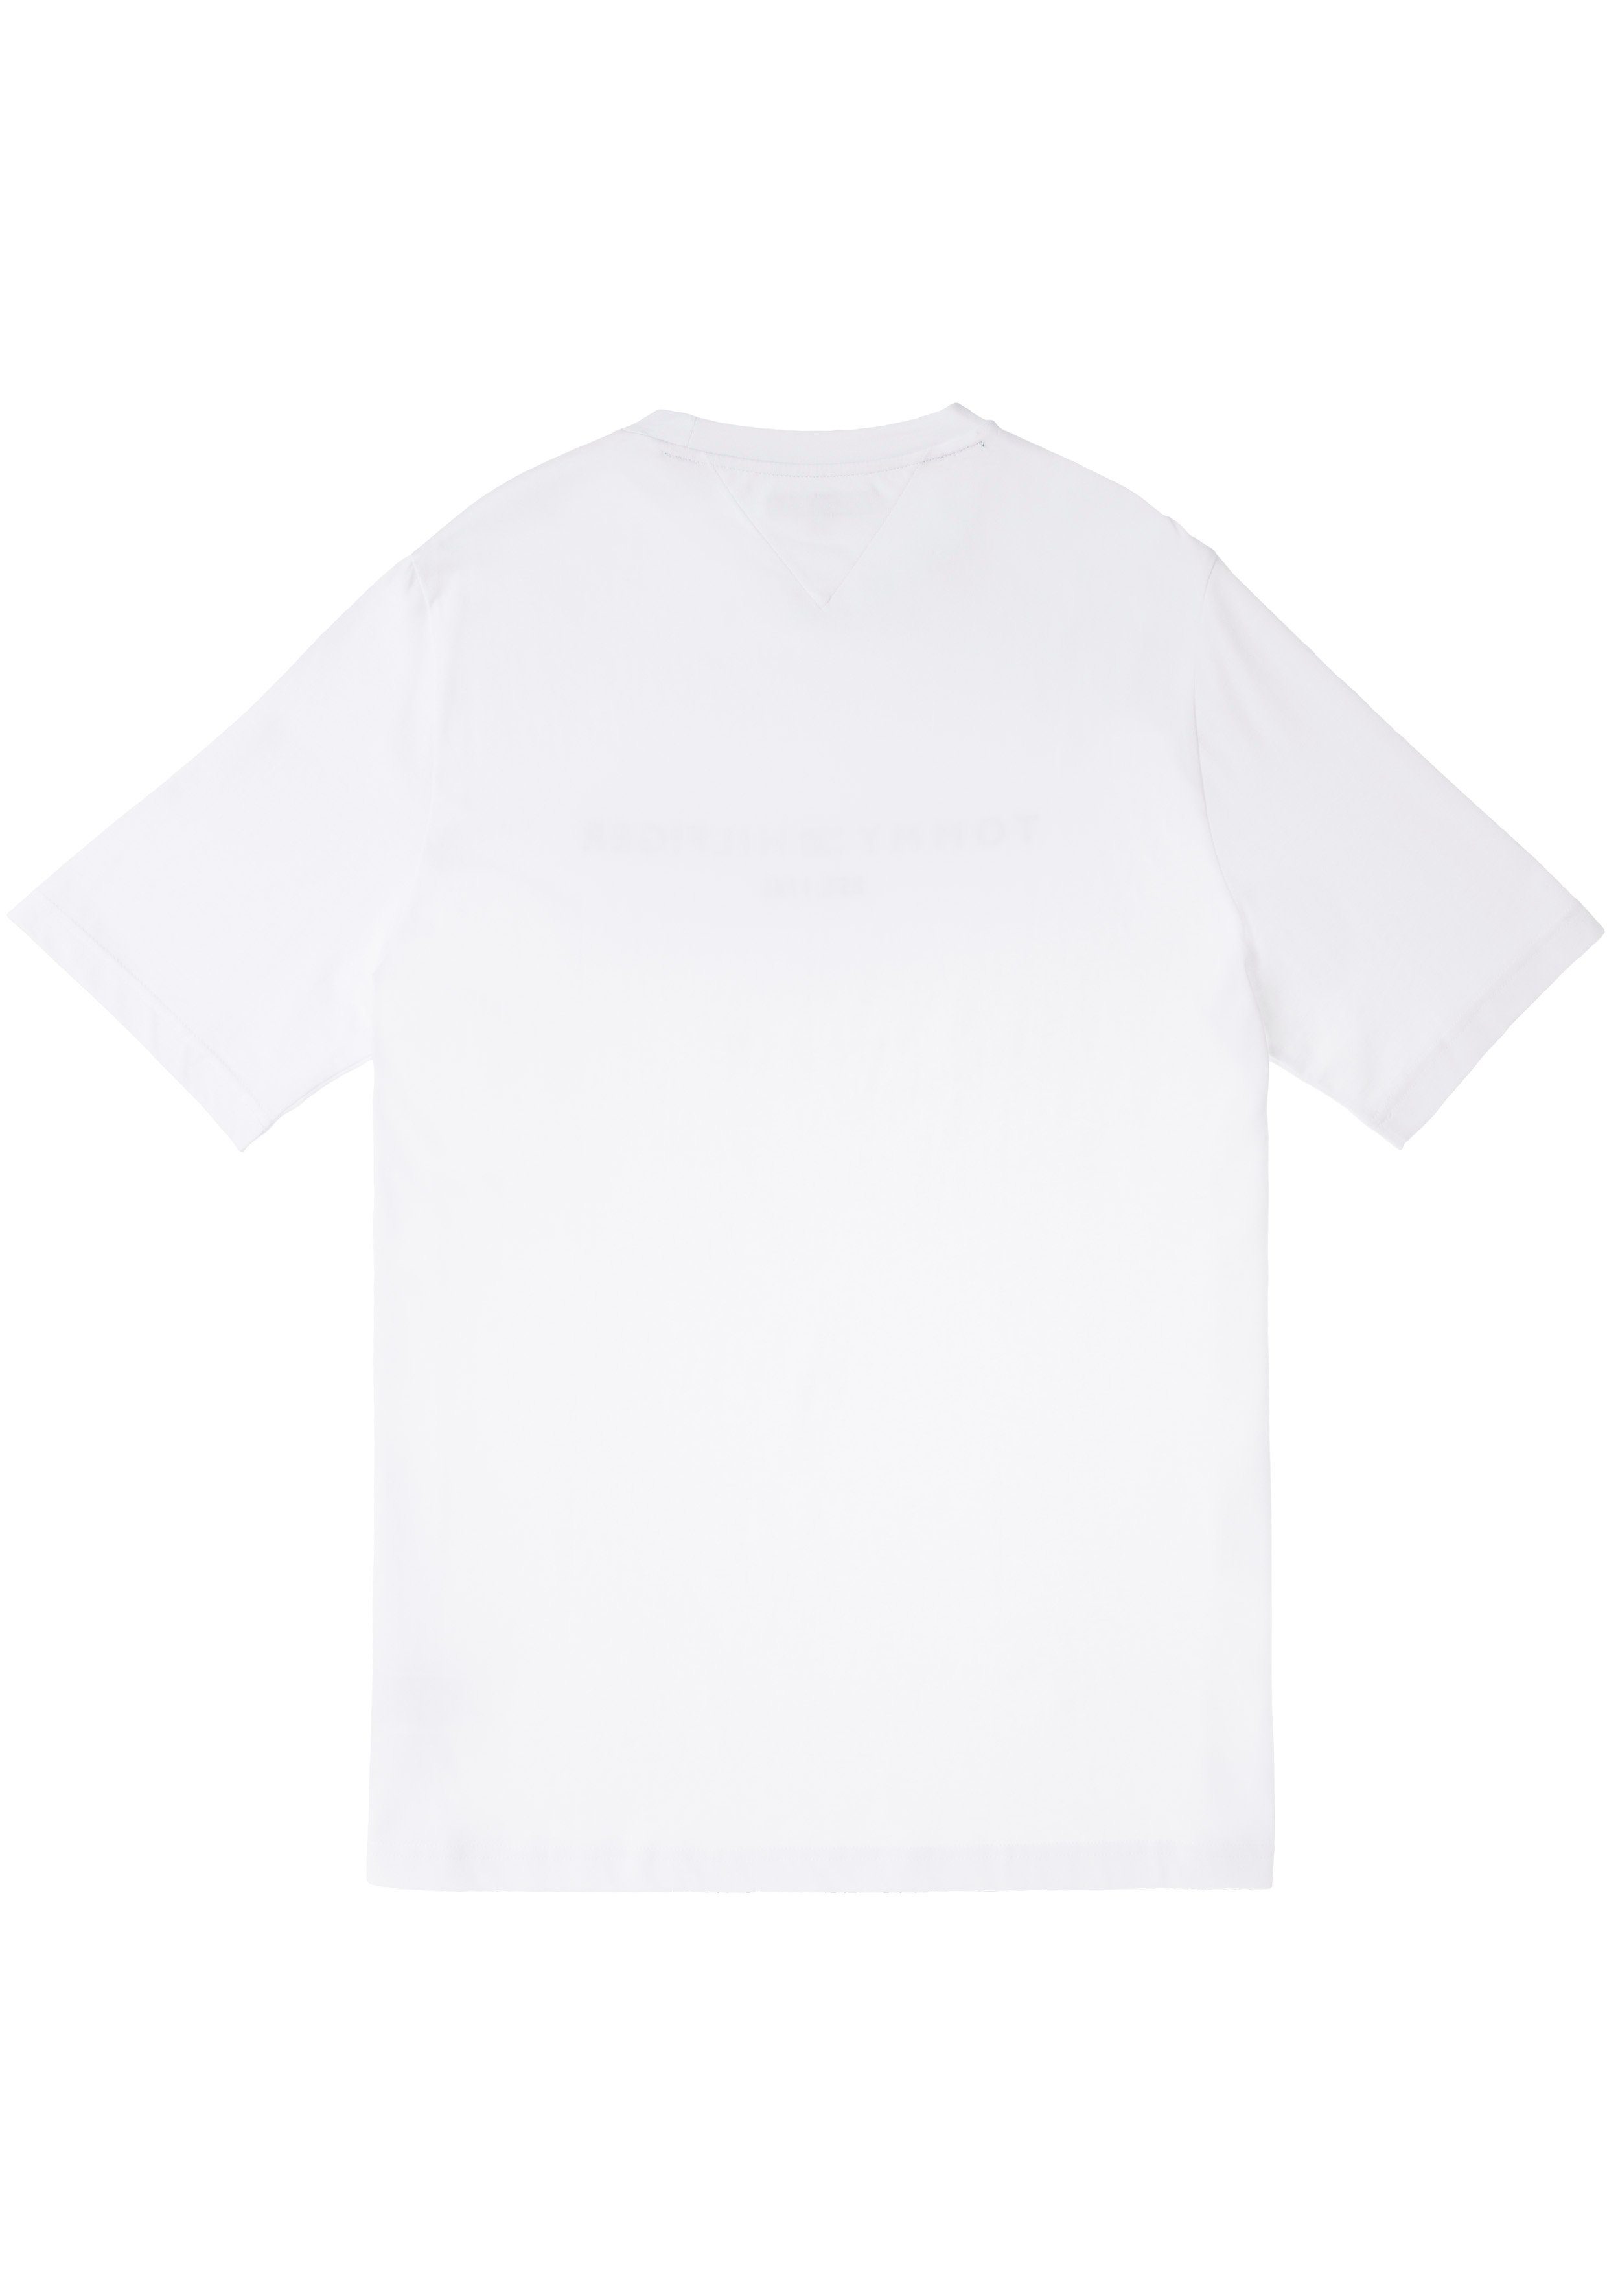 Tommy Hilfiger Logoschriftzug & Tommy auf BT-TOMMY TEE-B der Big weiß T-Shirt Hilfiger Tall Brust mit LOGO